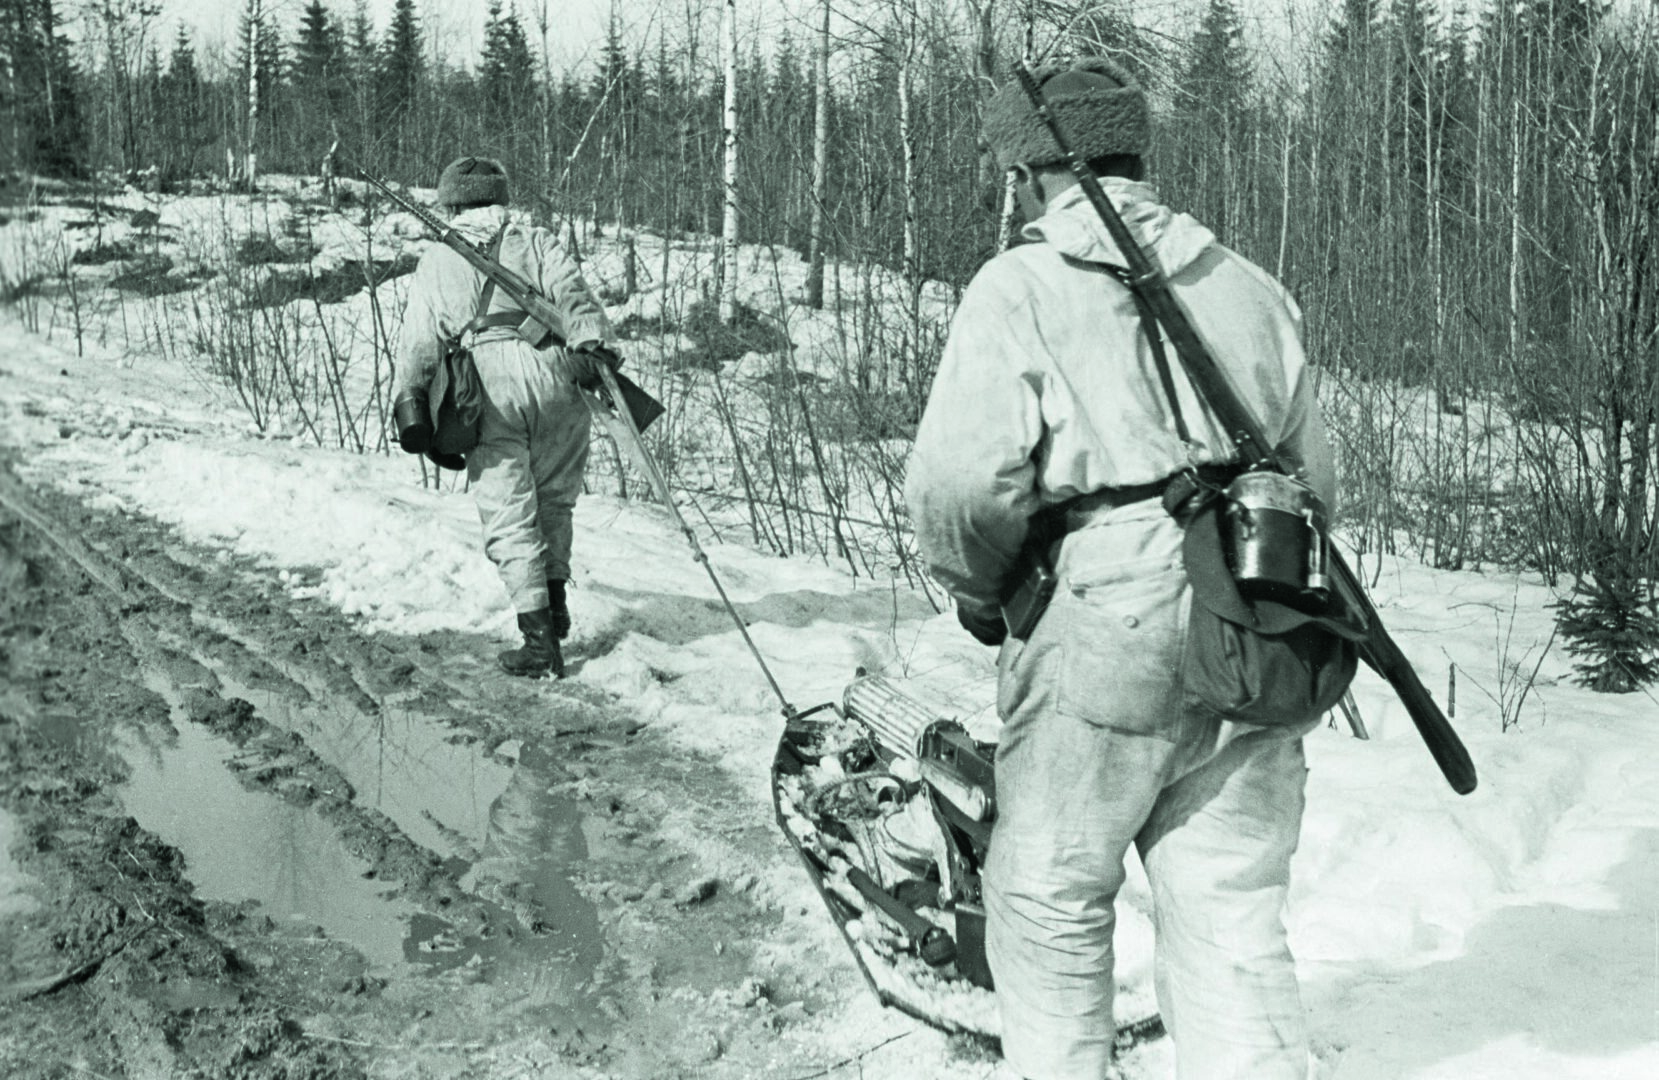 Goran ja Pertjärventaistelut 1942 olivat hyvin ankaria. Venäläiset yrittivät työntää suomalaisjoukot takaisin Syvärin länsipuolelle. Goran ja Pertjärven taisteluissa kaatui alikersantti Lahtinen. Rokka sen sijaan ampui koukkausta yrittävät 80 neuvostosotilasta.